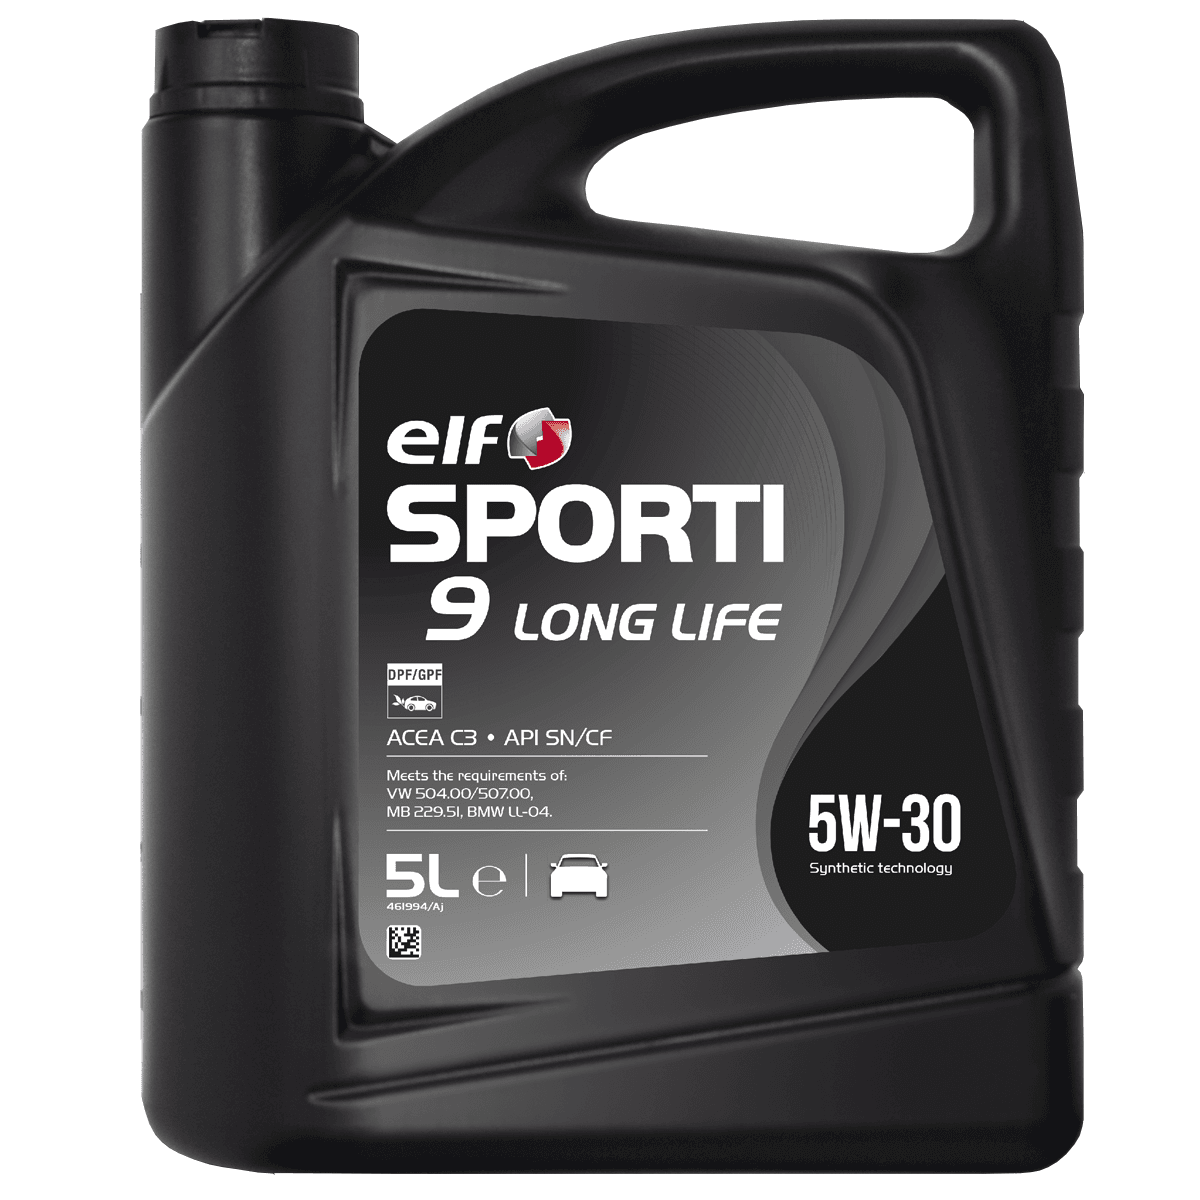 ELF SPORTI 9 LONG LIFE 5W30 (5L)* 214251